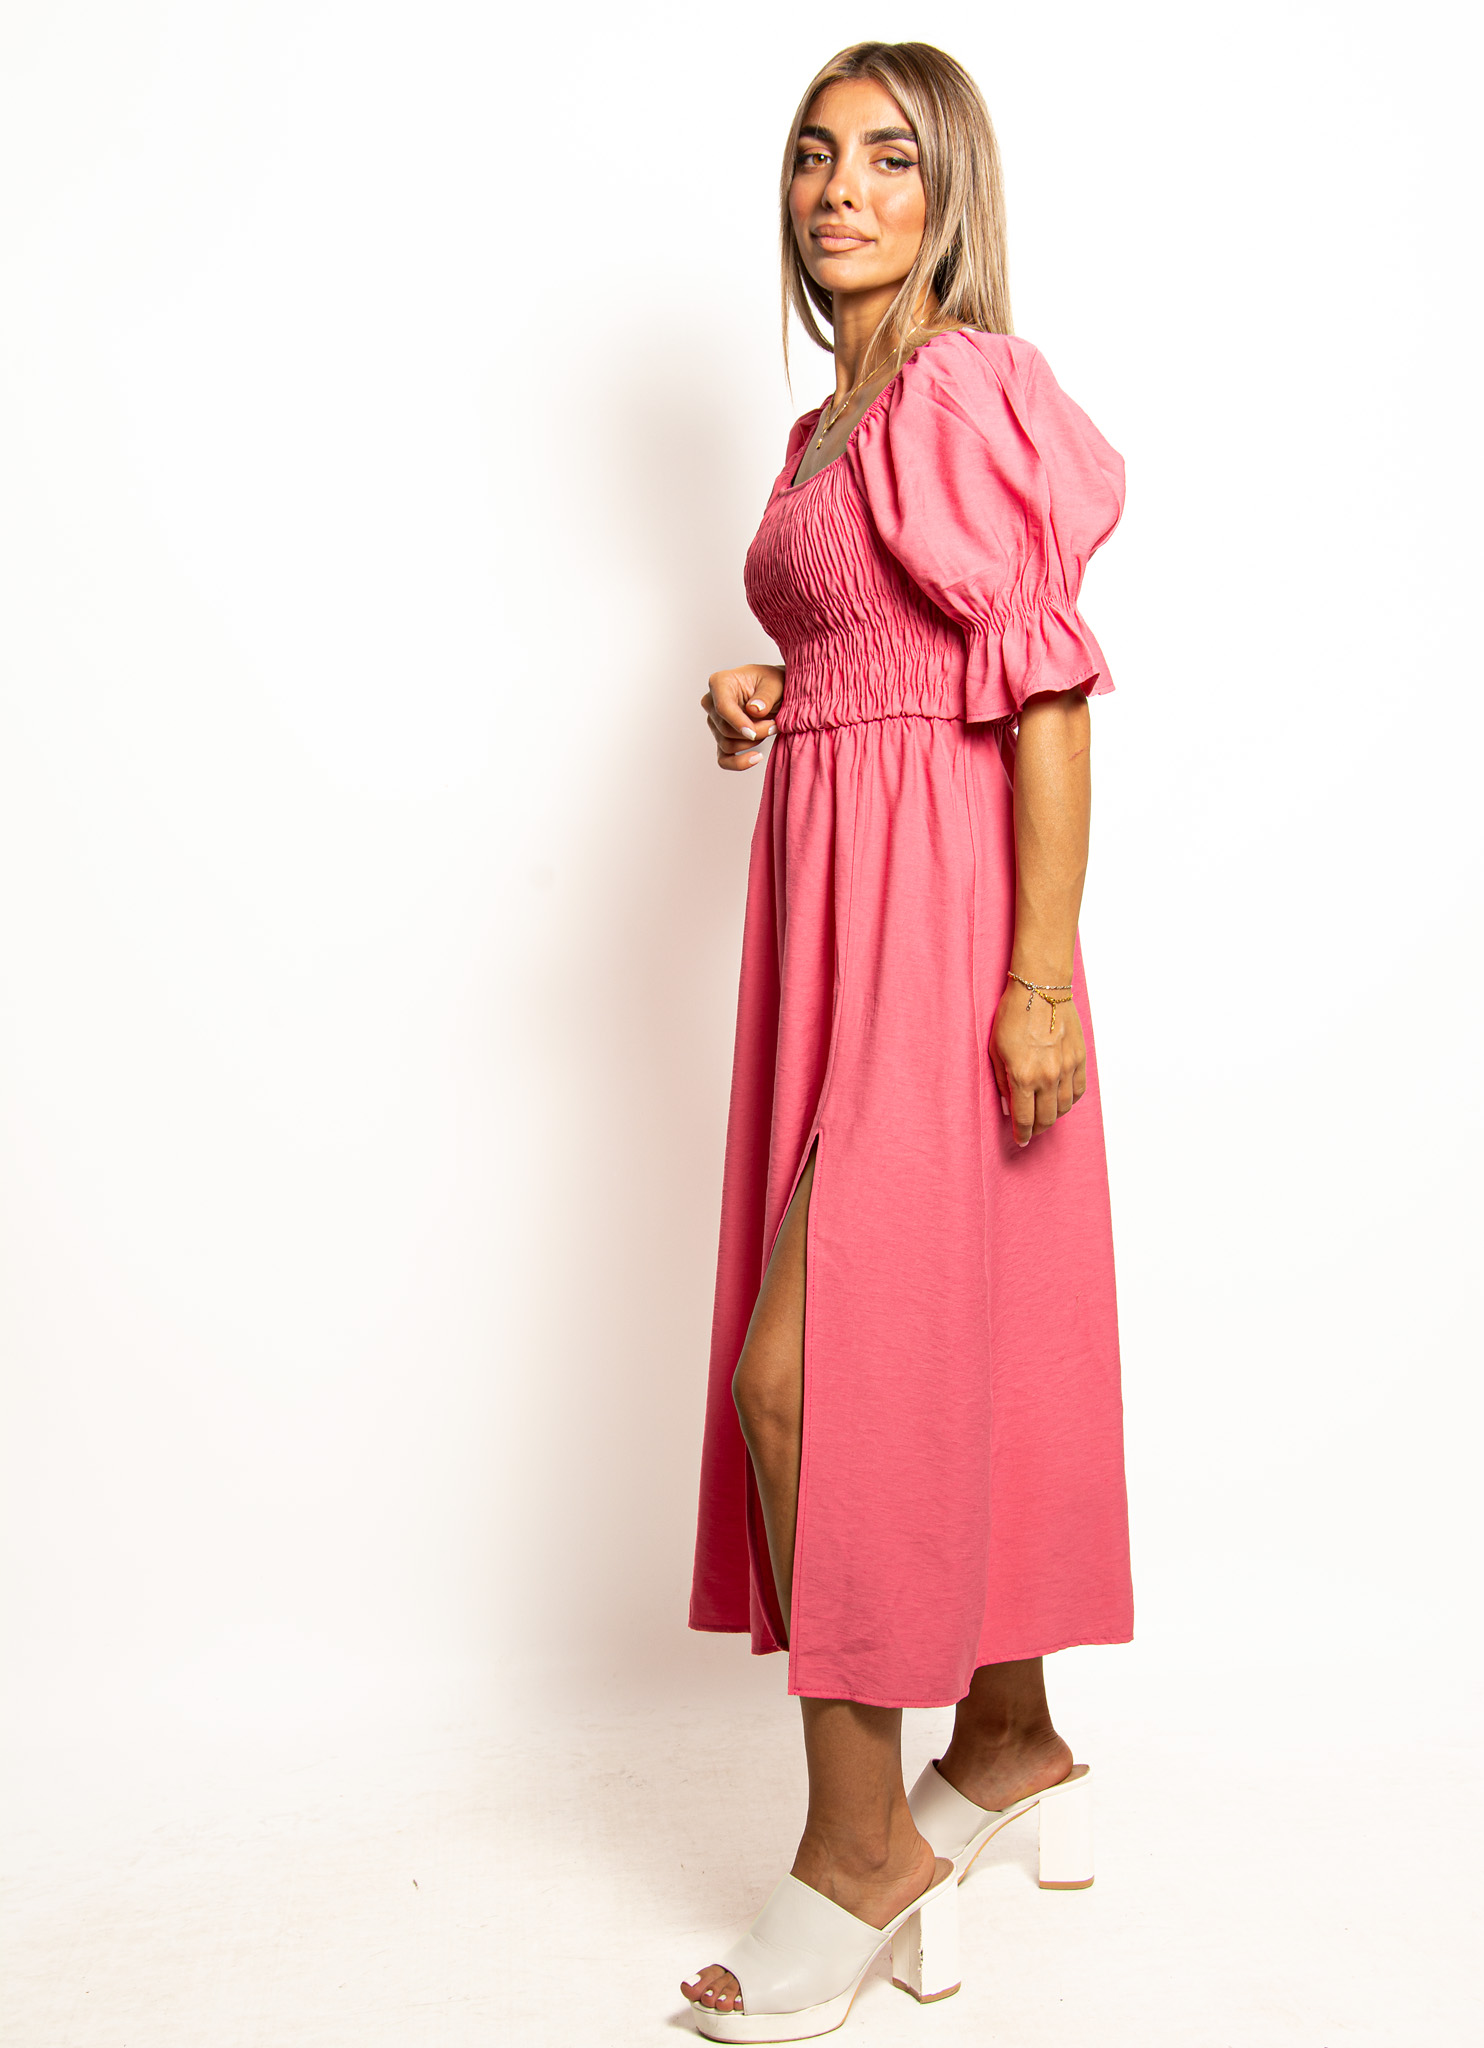 Φόρεμα Σφηκοφωλιά με Φουσκωτά Μανίκια Φούξια – EllenBoutique